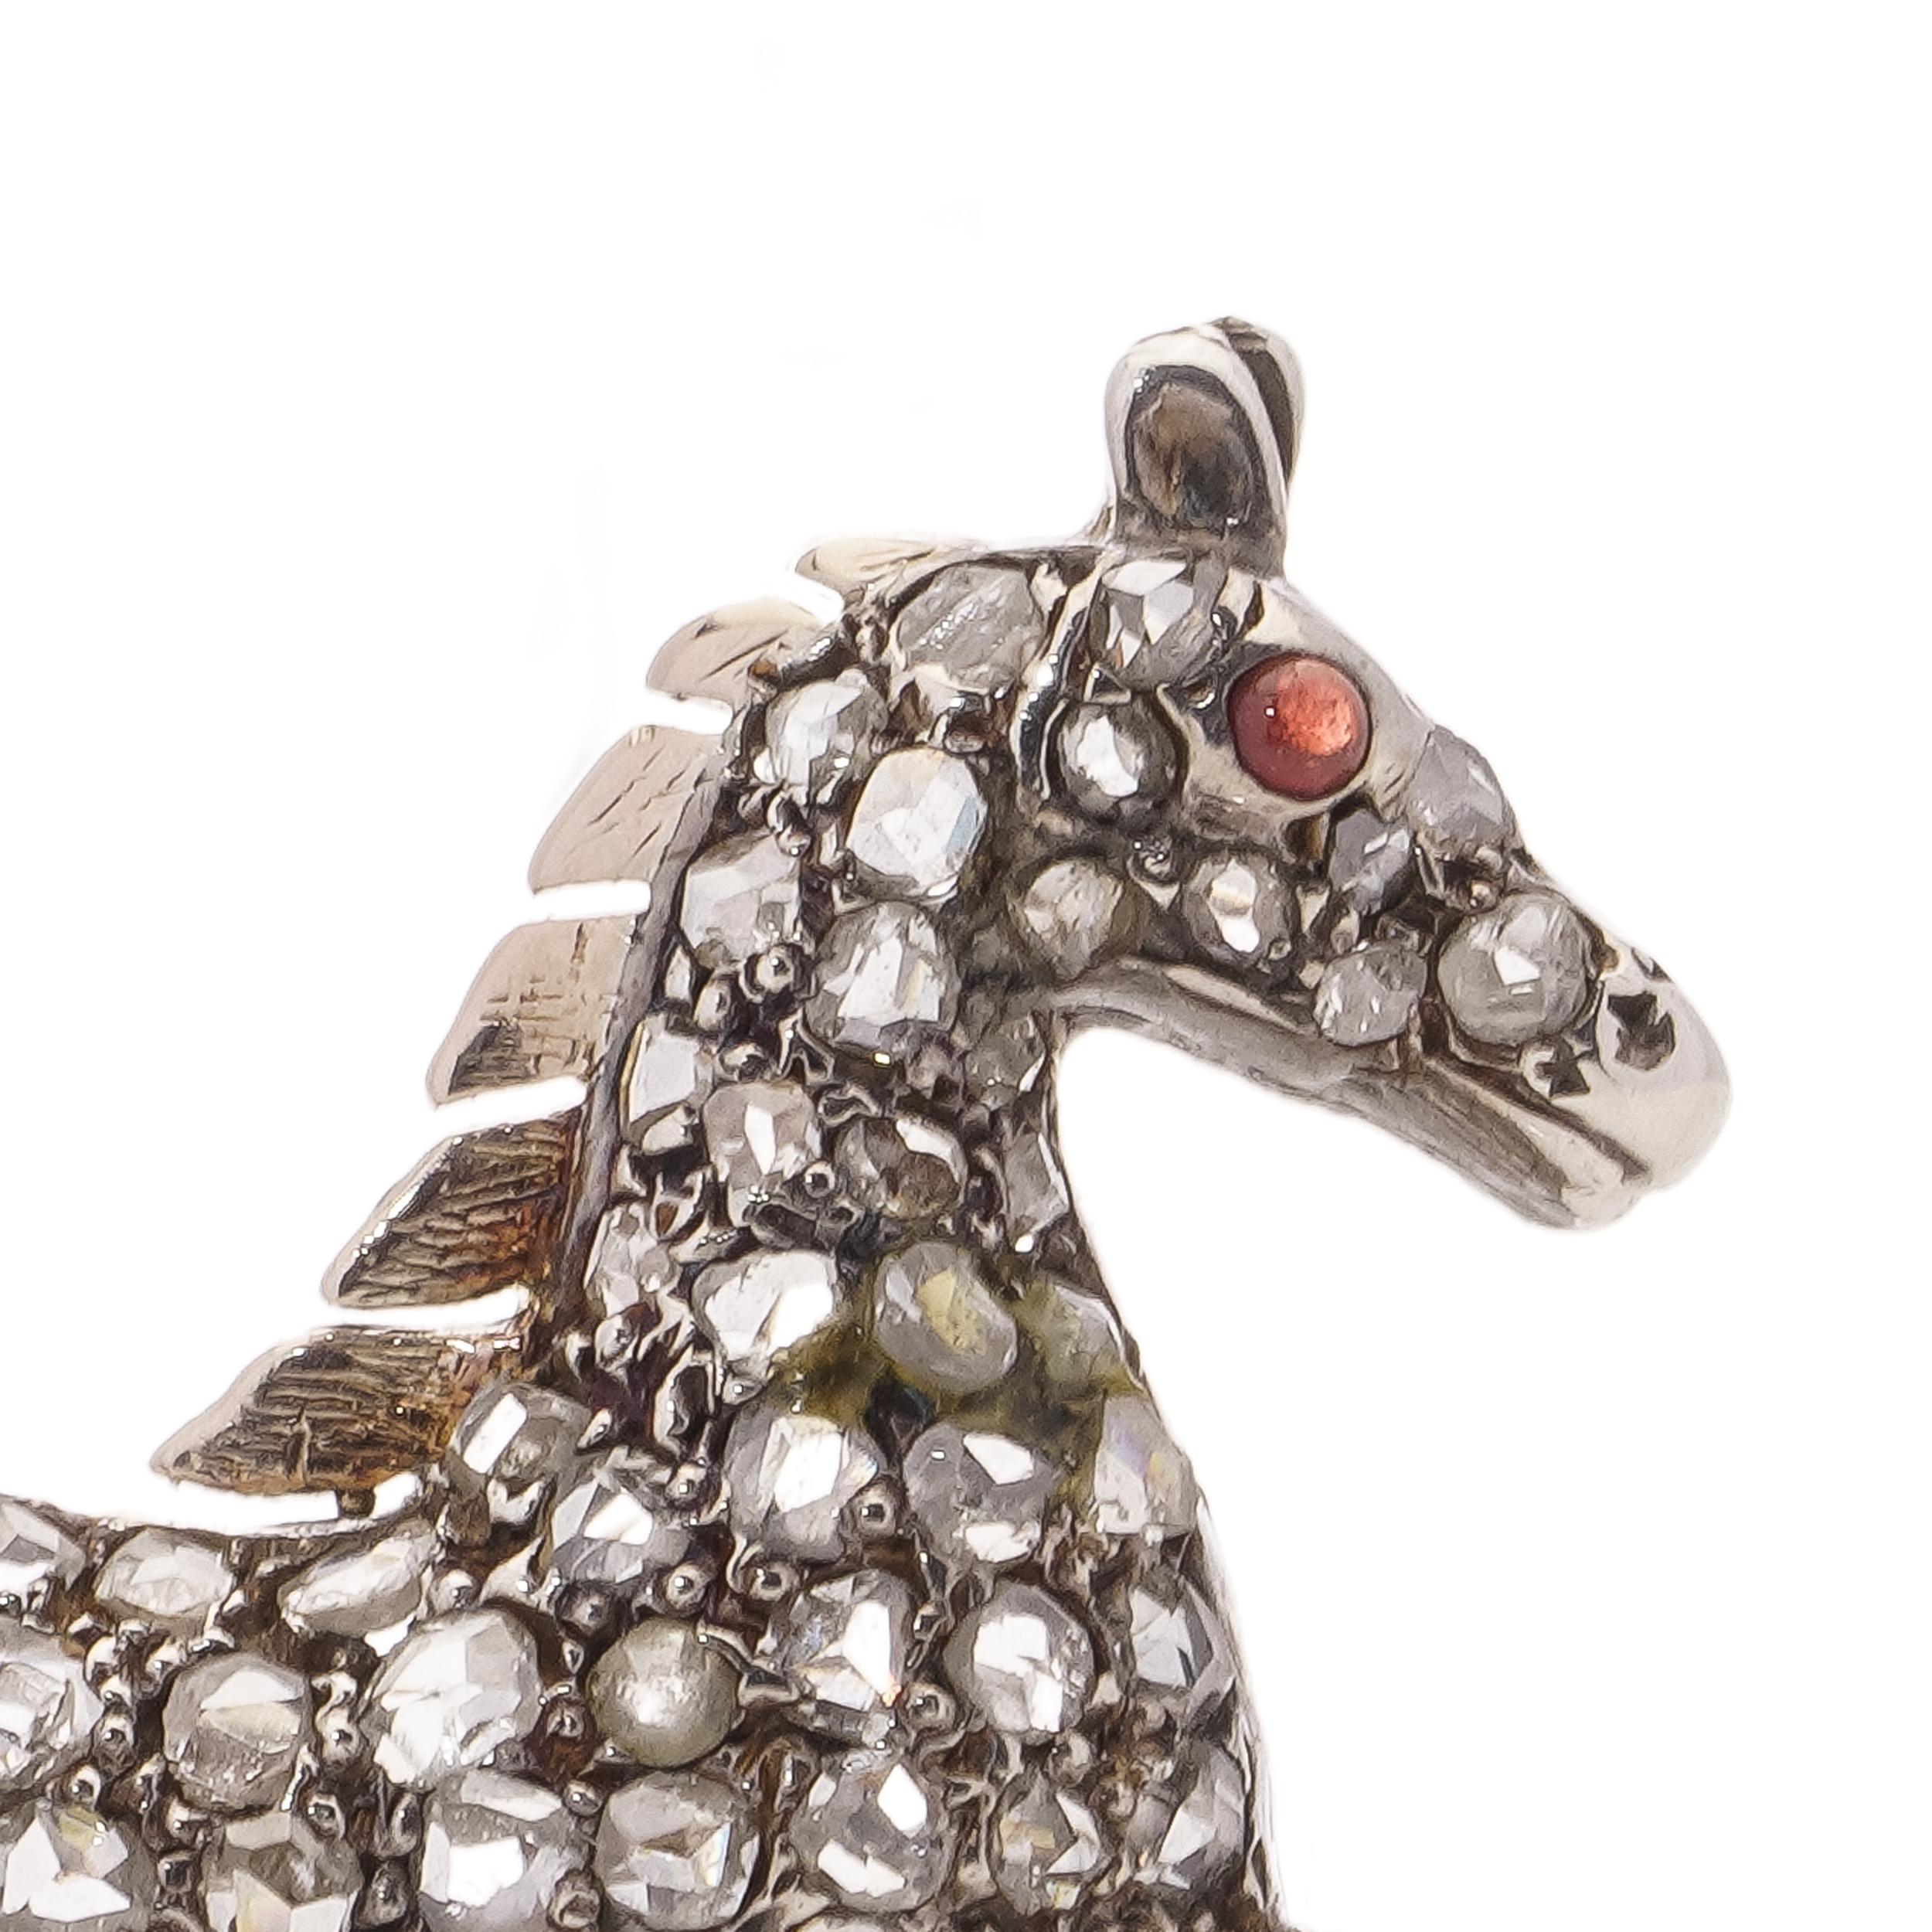 Viktorianische Silber und 9kt vergoldet zurück, Pferd Brosche mit rosa Diamanten und Cabochon Rubin geschnitten.
Hergestellt in England, CIRCA 1860er Jahre.
Das Röntgenbild wurde positiv auf 9kt. Gold und Silber getestet. 

Die Abmessungen -
Größe: